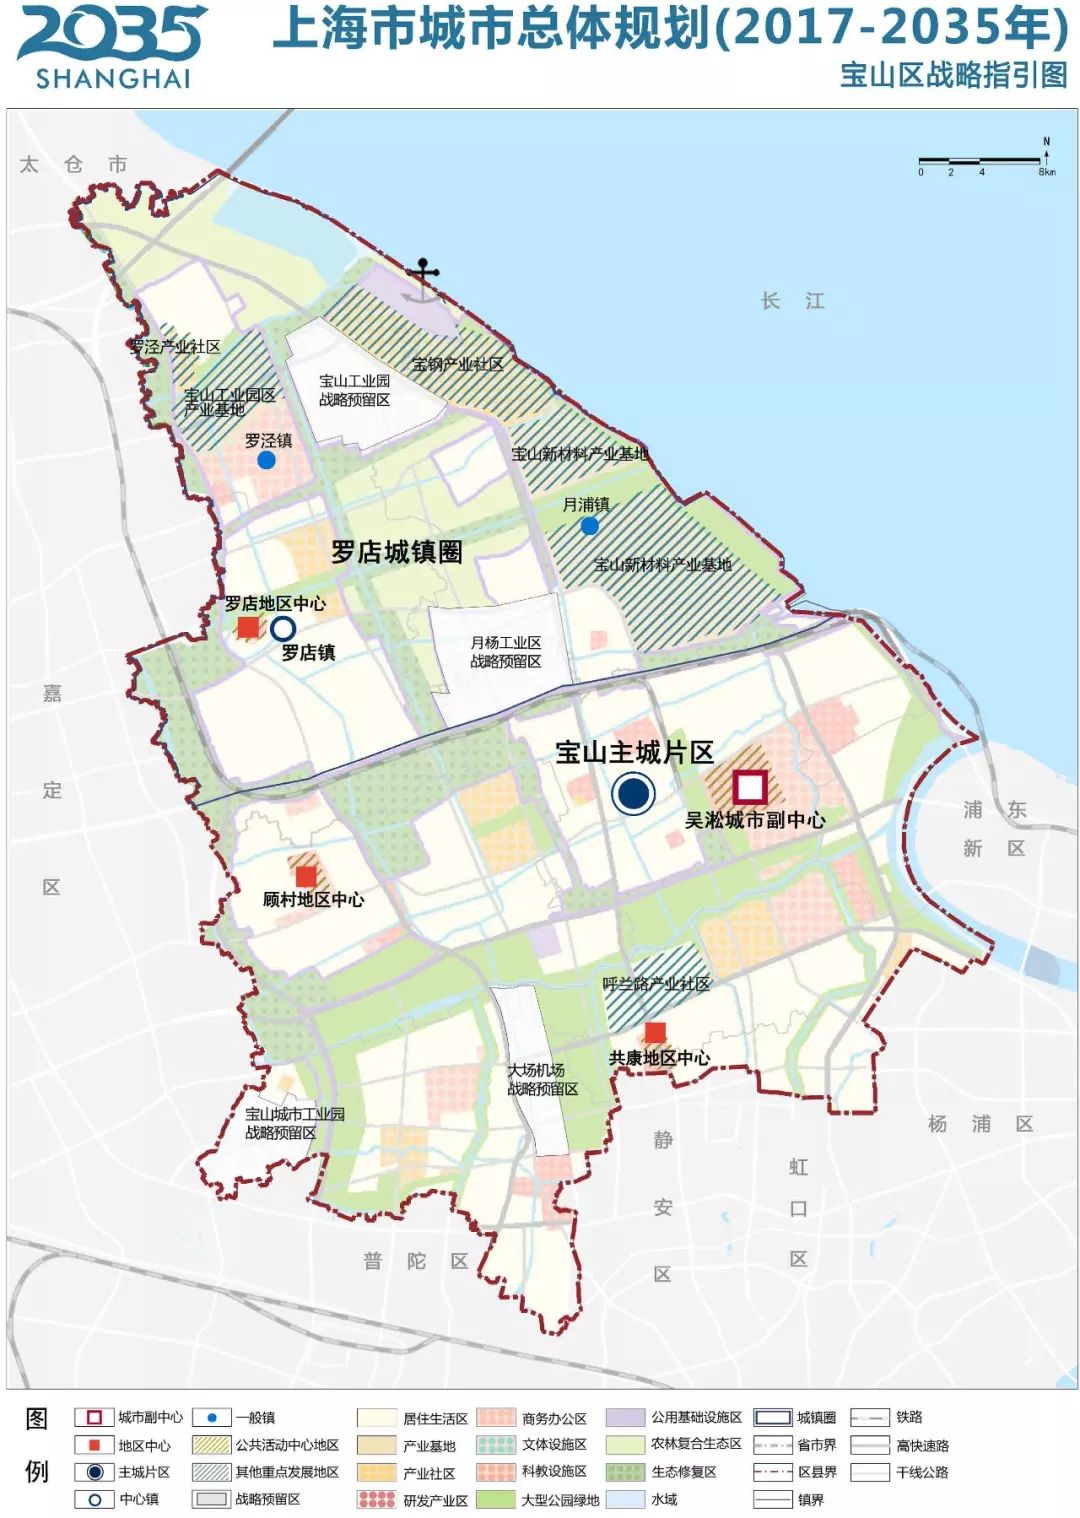 审议通过《宝山区总体规划暨土地利用总体规划(2017—2035年)》